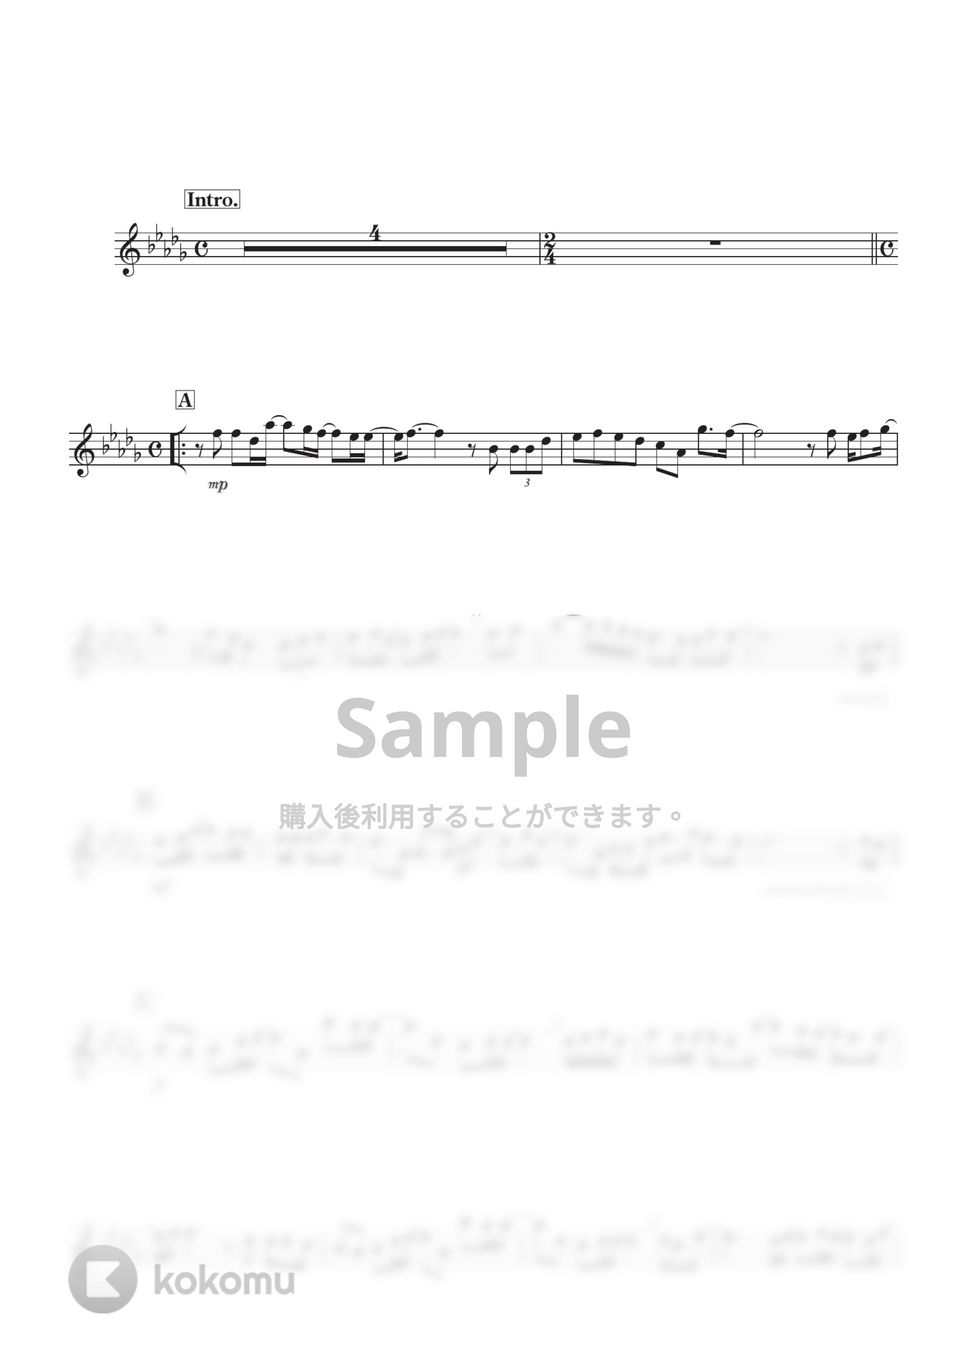 back number - アイラブユー (C) by kanamusic